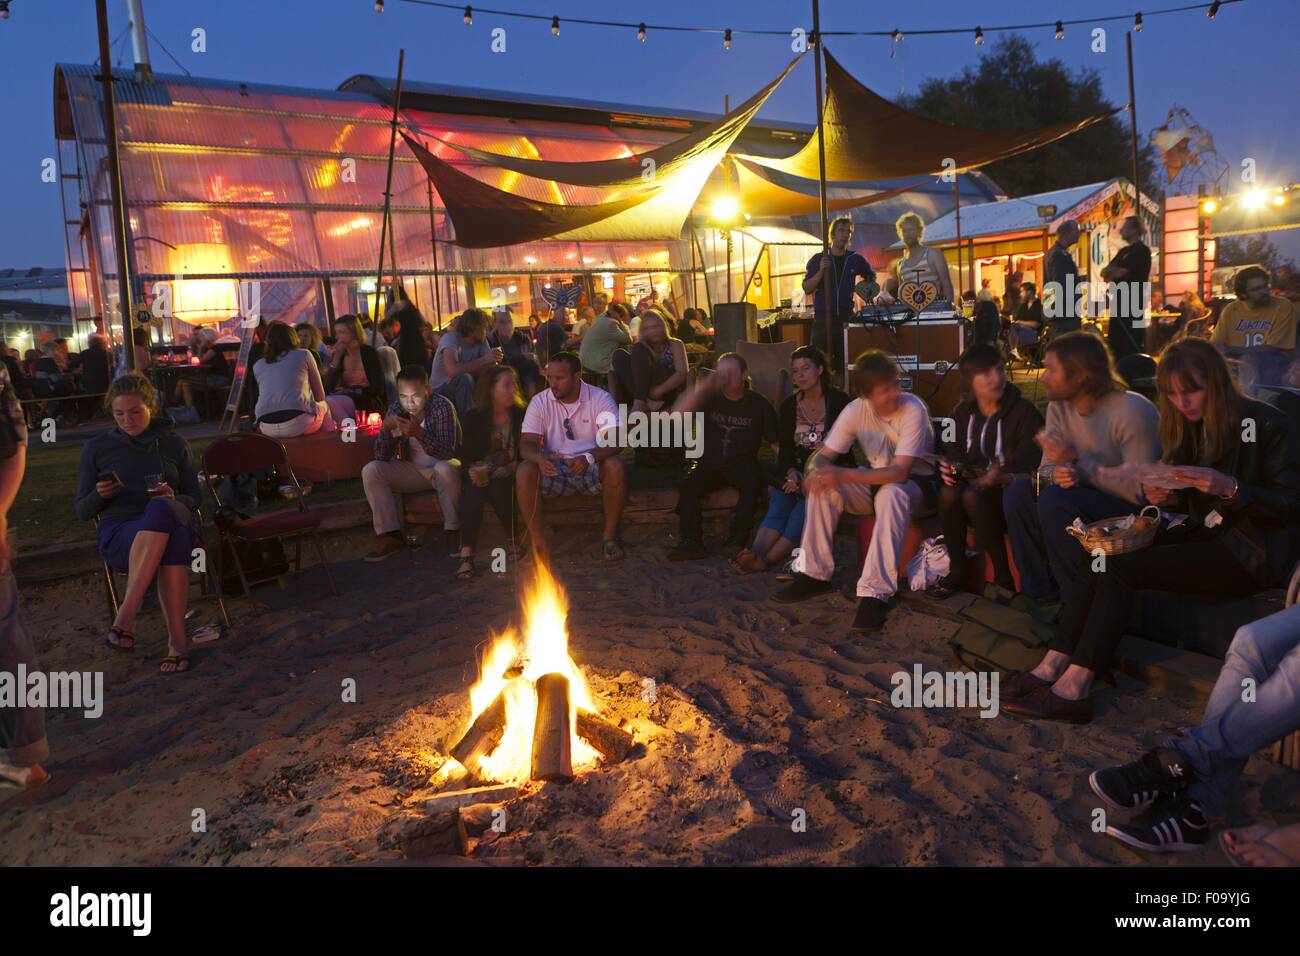 People around campfire at Noorderlicht Cafe, NDSM shipyard, Noord, Amsterdam, Netherlands Stock Photo